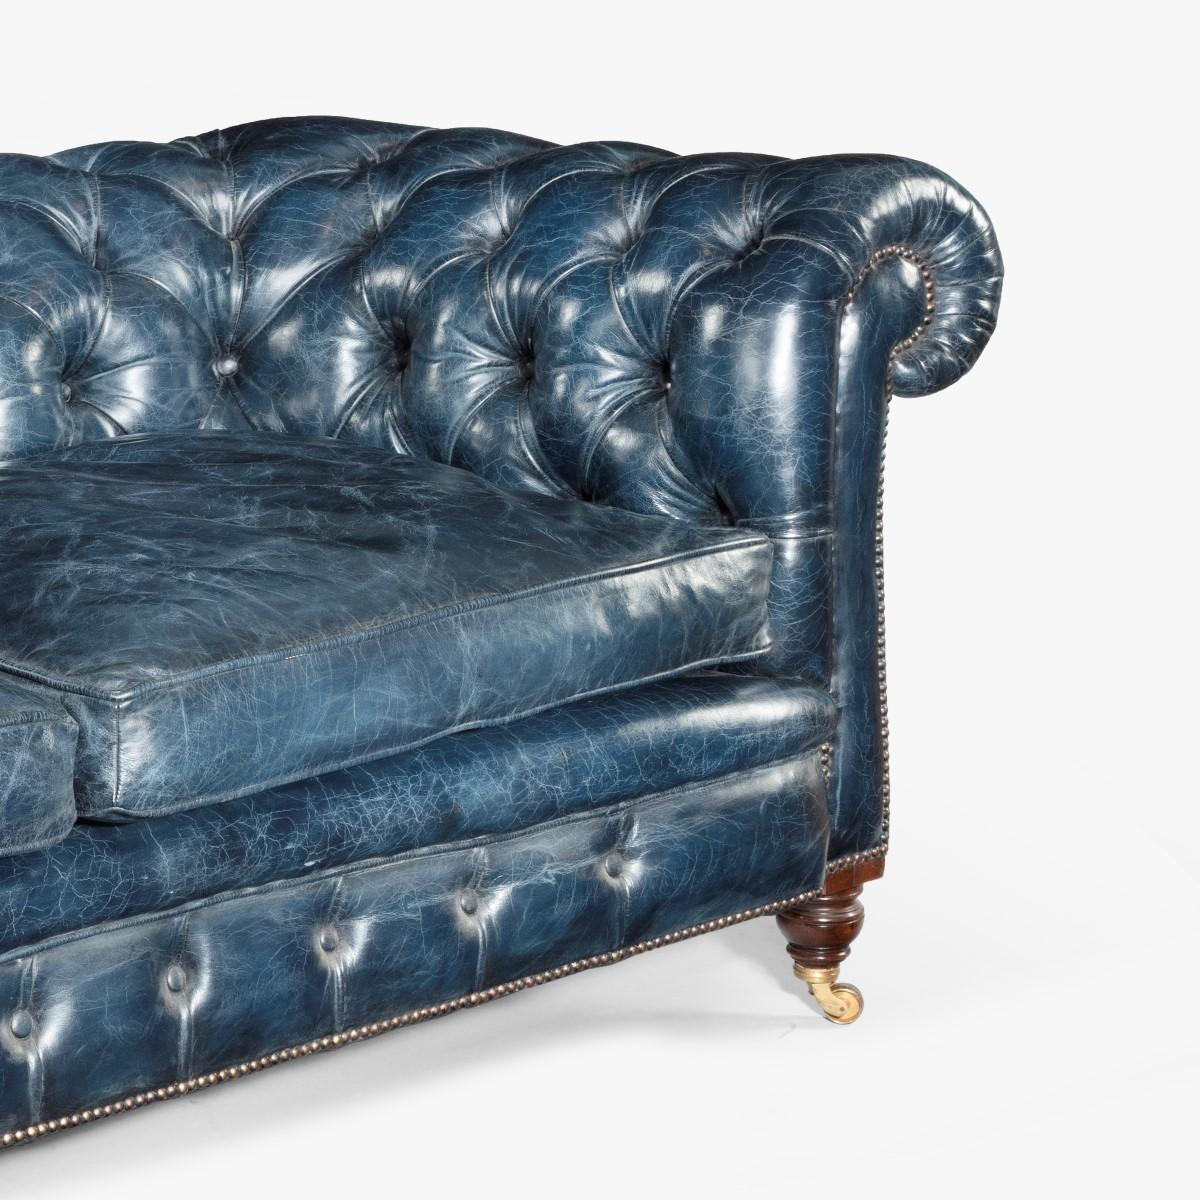 Zweisitziges viktorianisches Chesterfield-Sofa aus Leder (Britisch)